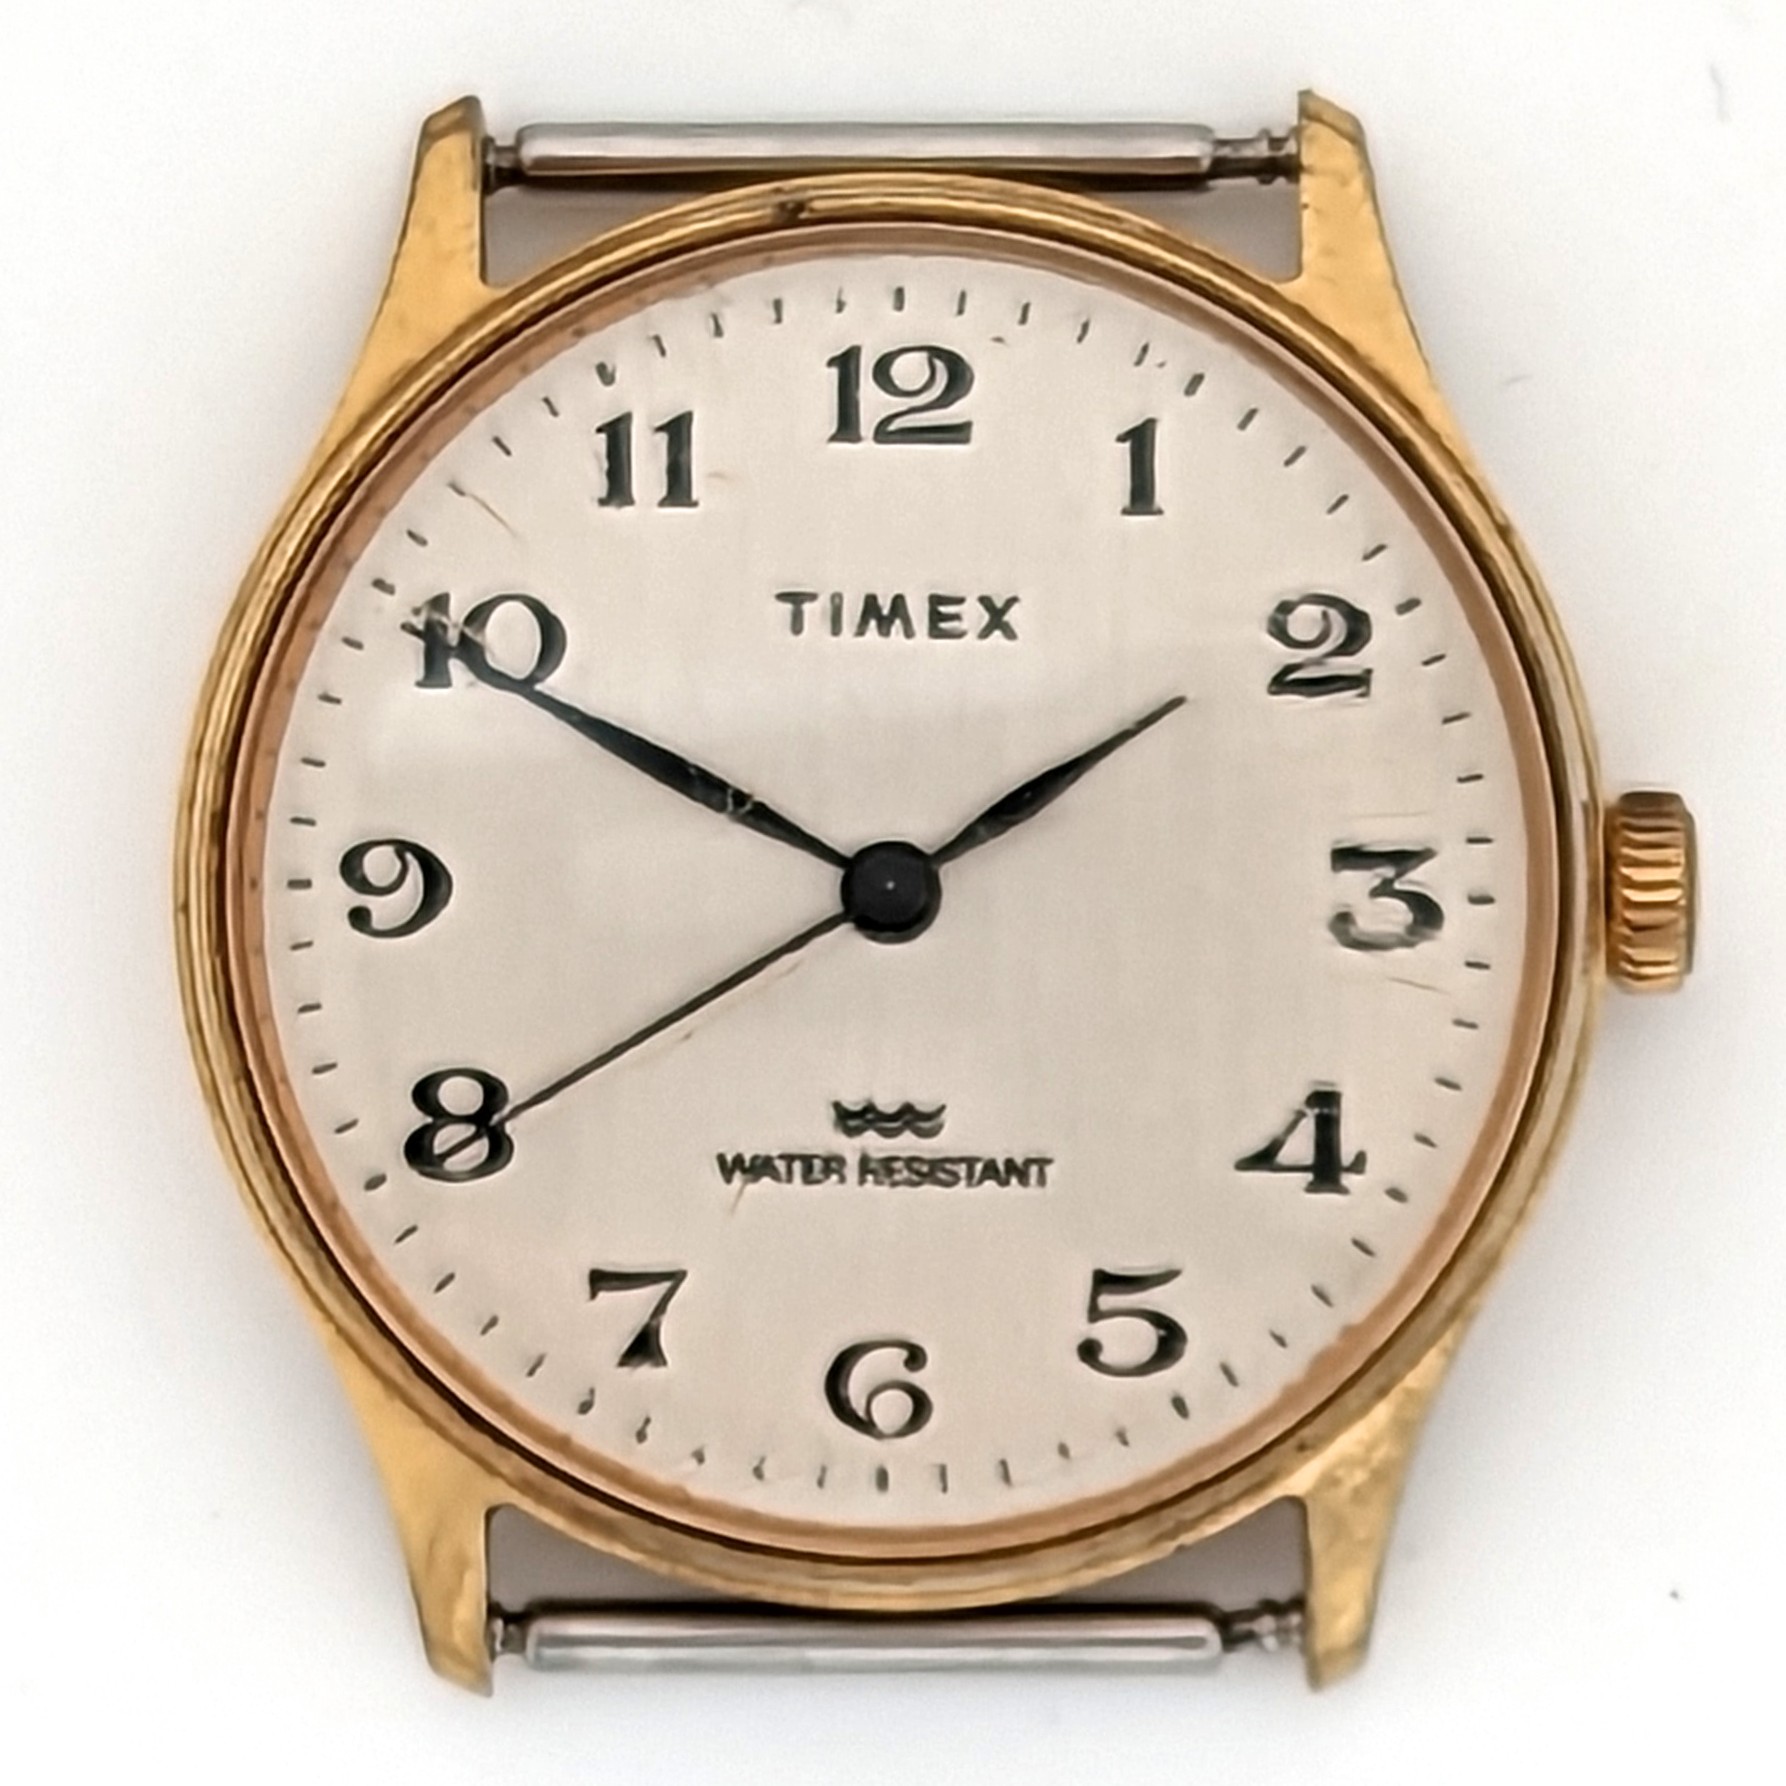 Timex Marlin 20643 11683 [1983]